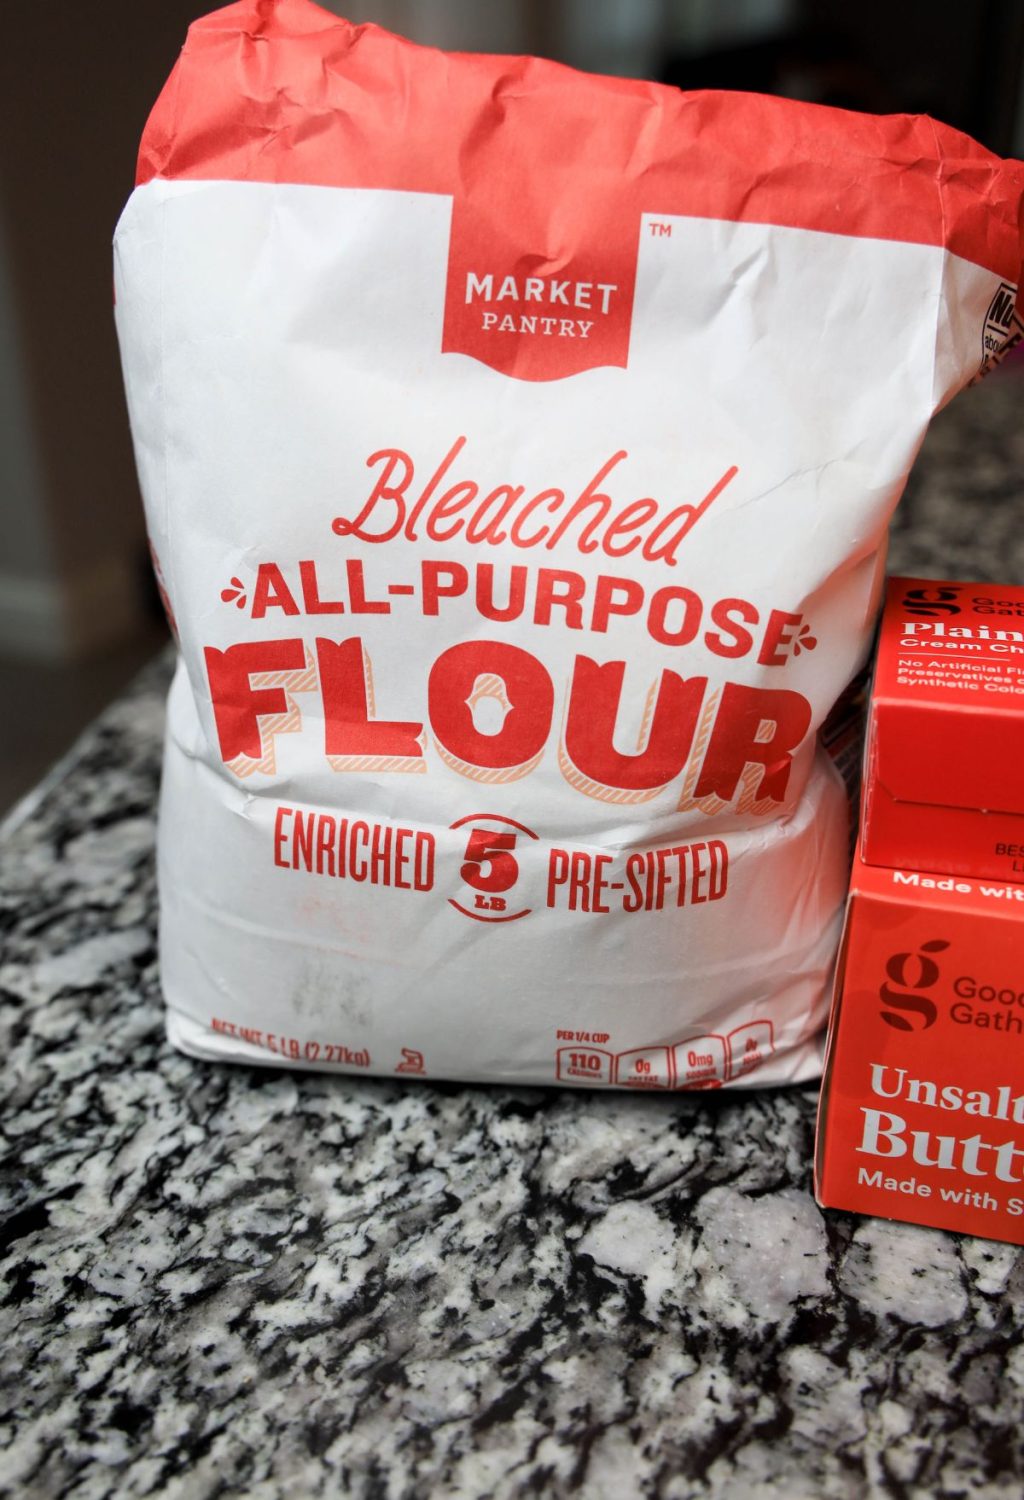 A bag of all purpose flour next to a bag of flour.